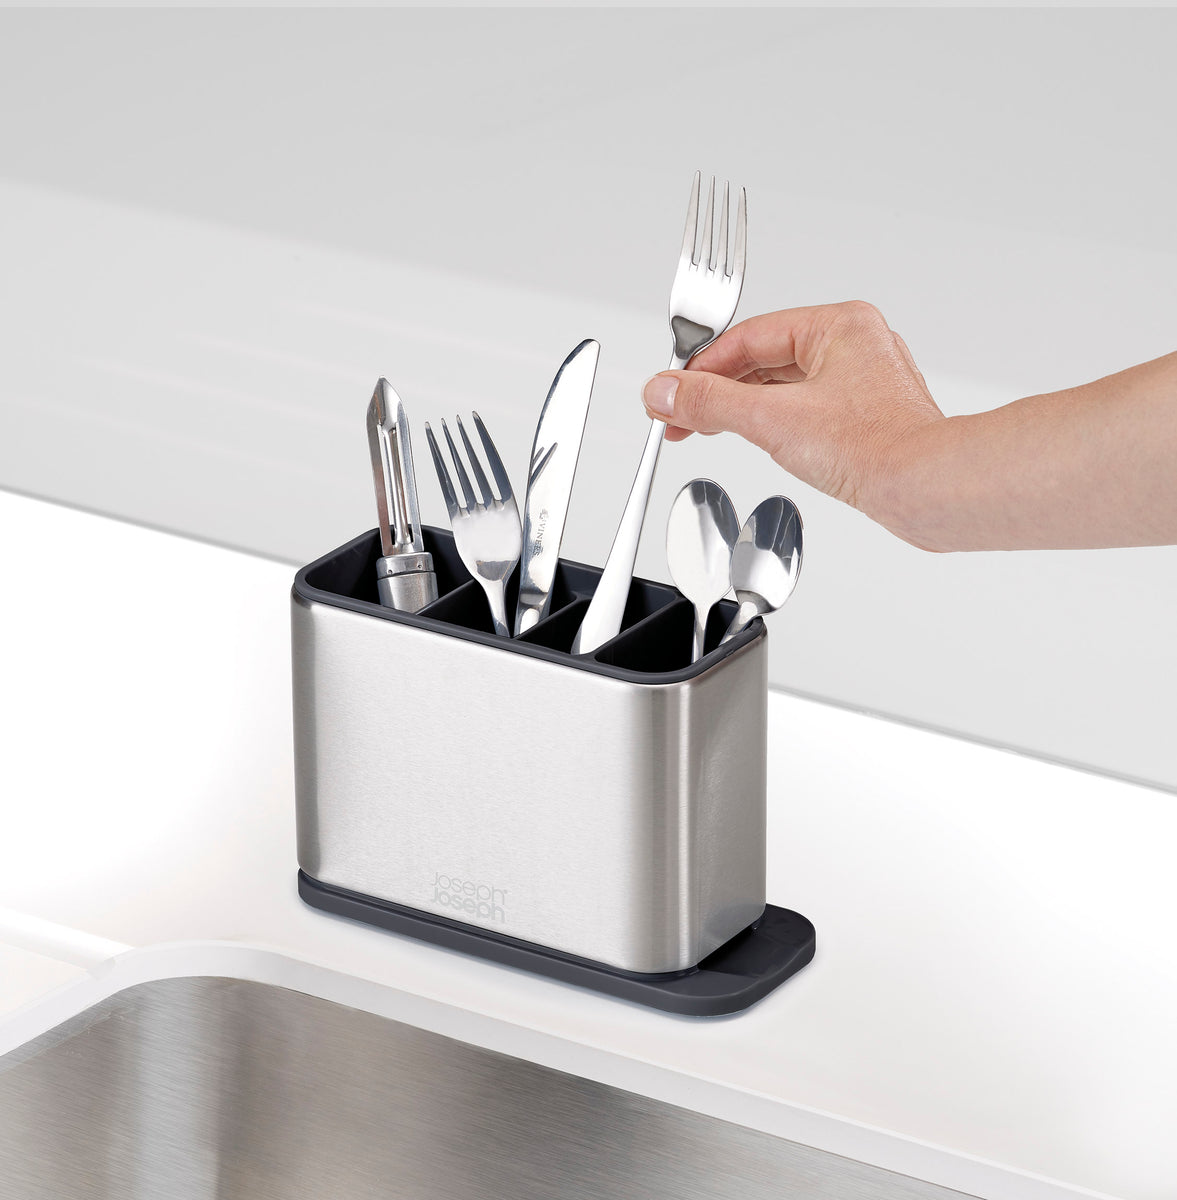 Joseph Joseph Duo - Escurridor de cubiertos para fregadero de cocina con  ranura para cuchillos, organizador de cubiertos para fregadero de cocina